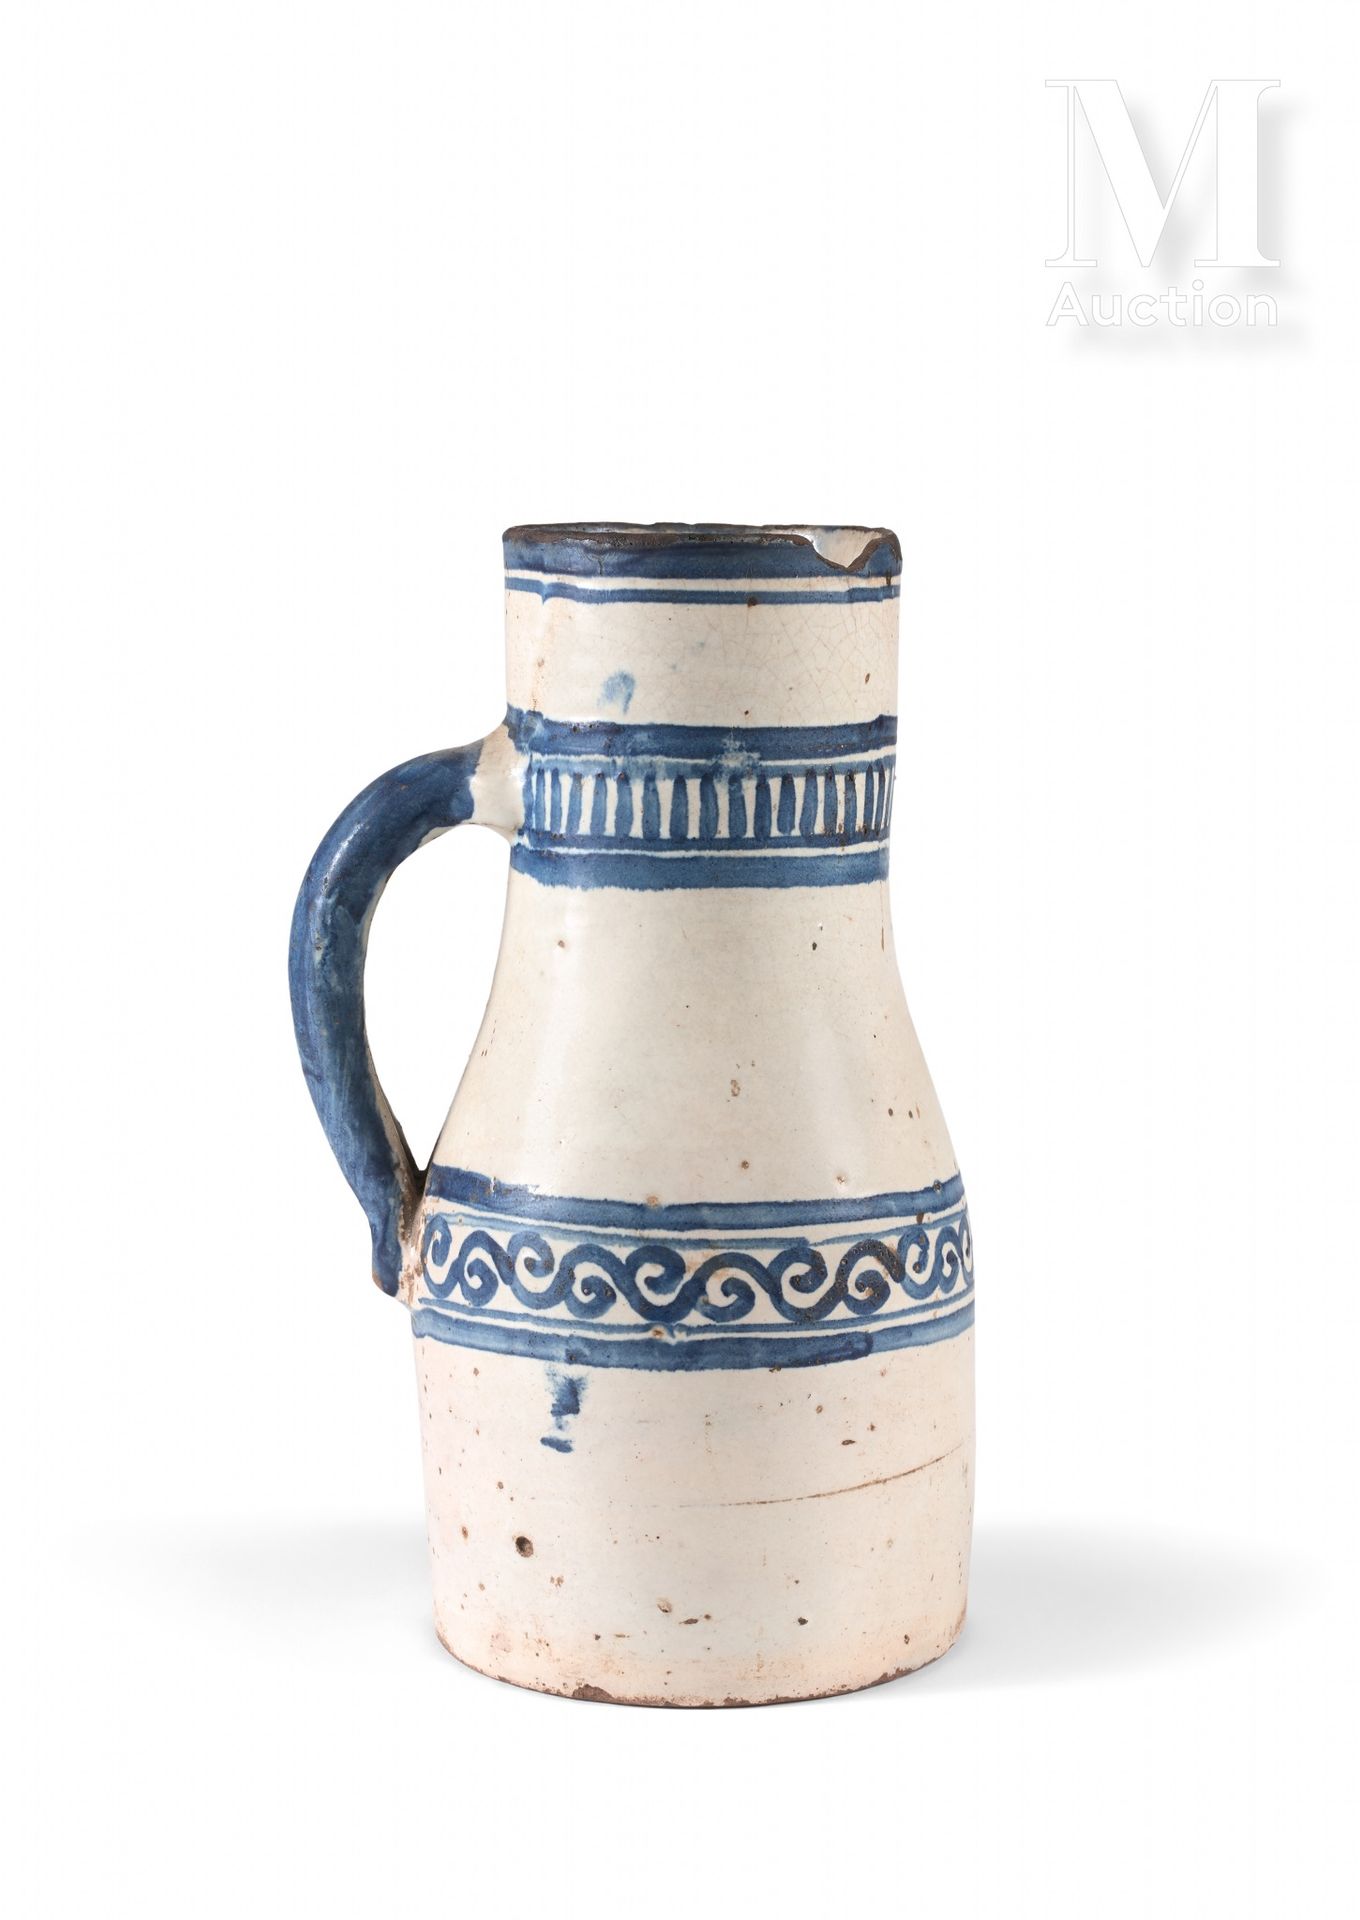 Berrada - Jarre à eau Marruecos, Fez, siglo XVIII

Jarra de cerámica con decorac&hellip;